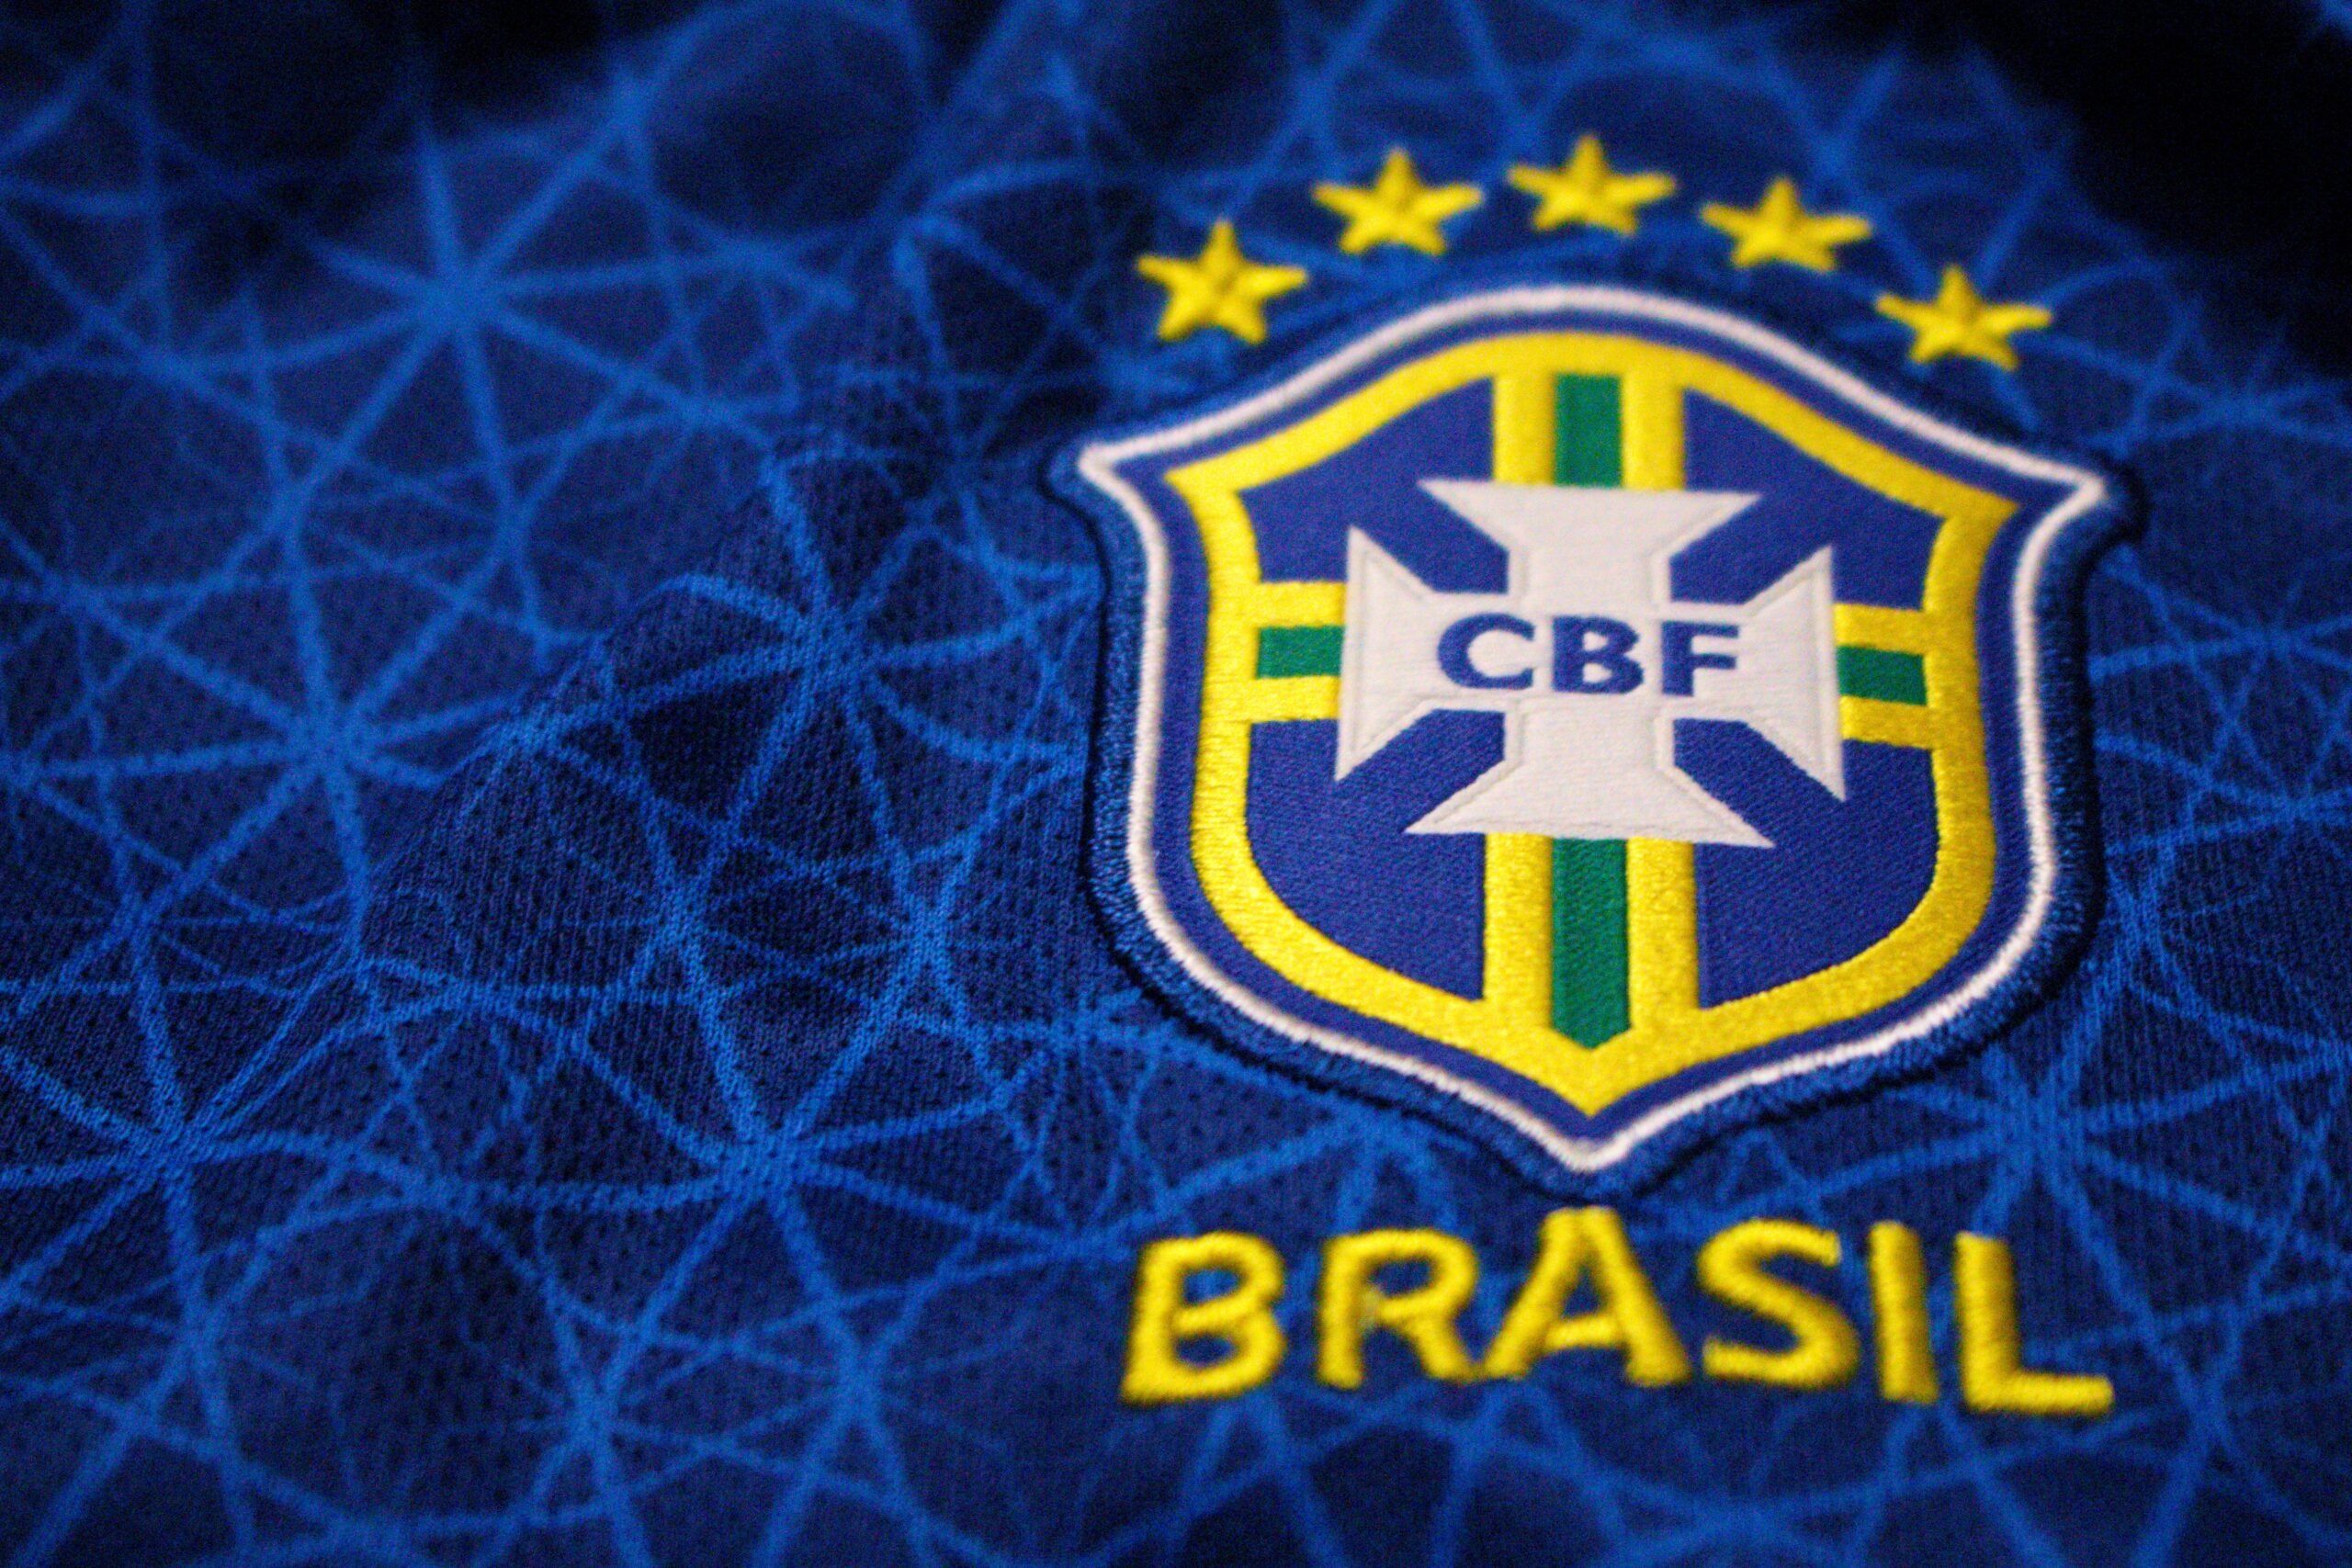 Nesta segunda-feira (07), Tite anunciou a convocação da Seleção Brasileira para a Copa do Mundo de 2022. Confira quais foram os 26 convocados.